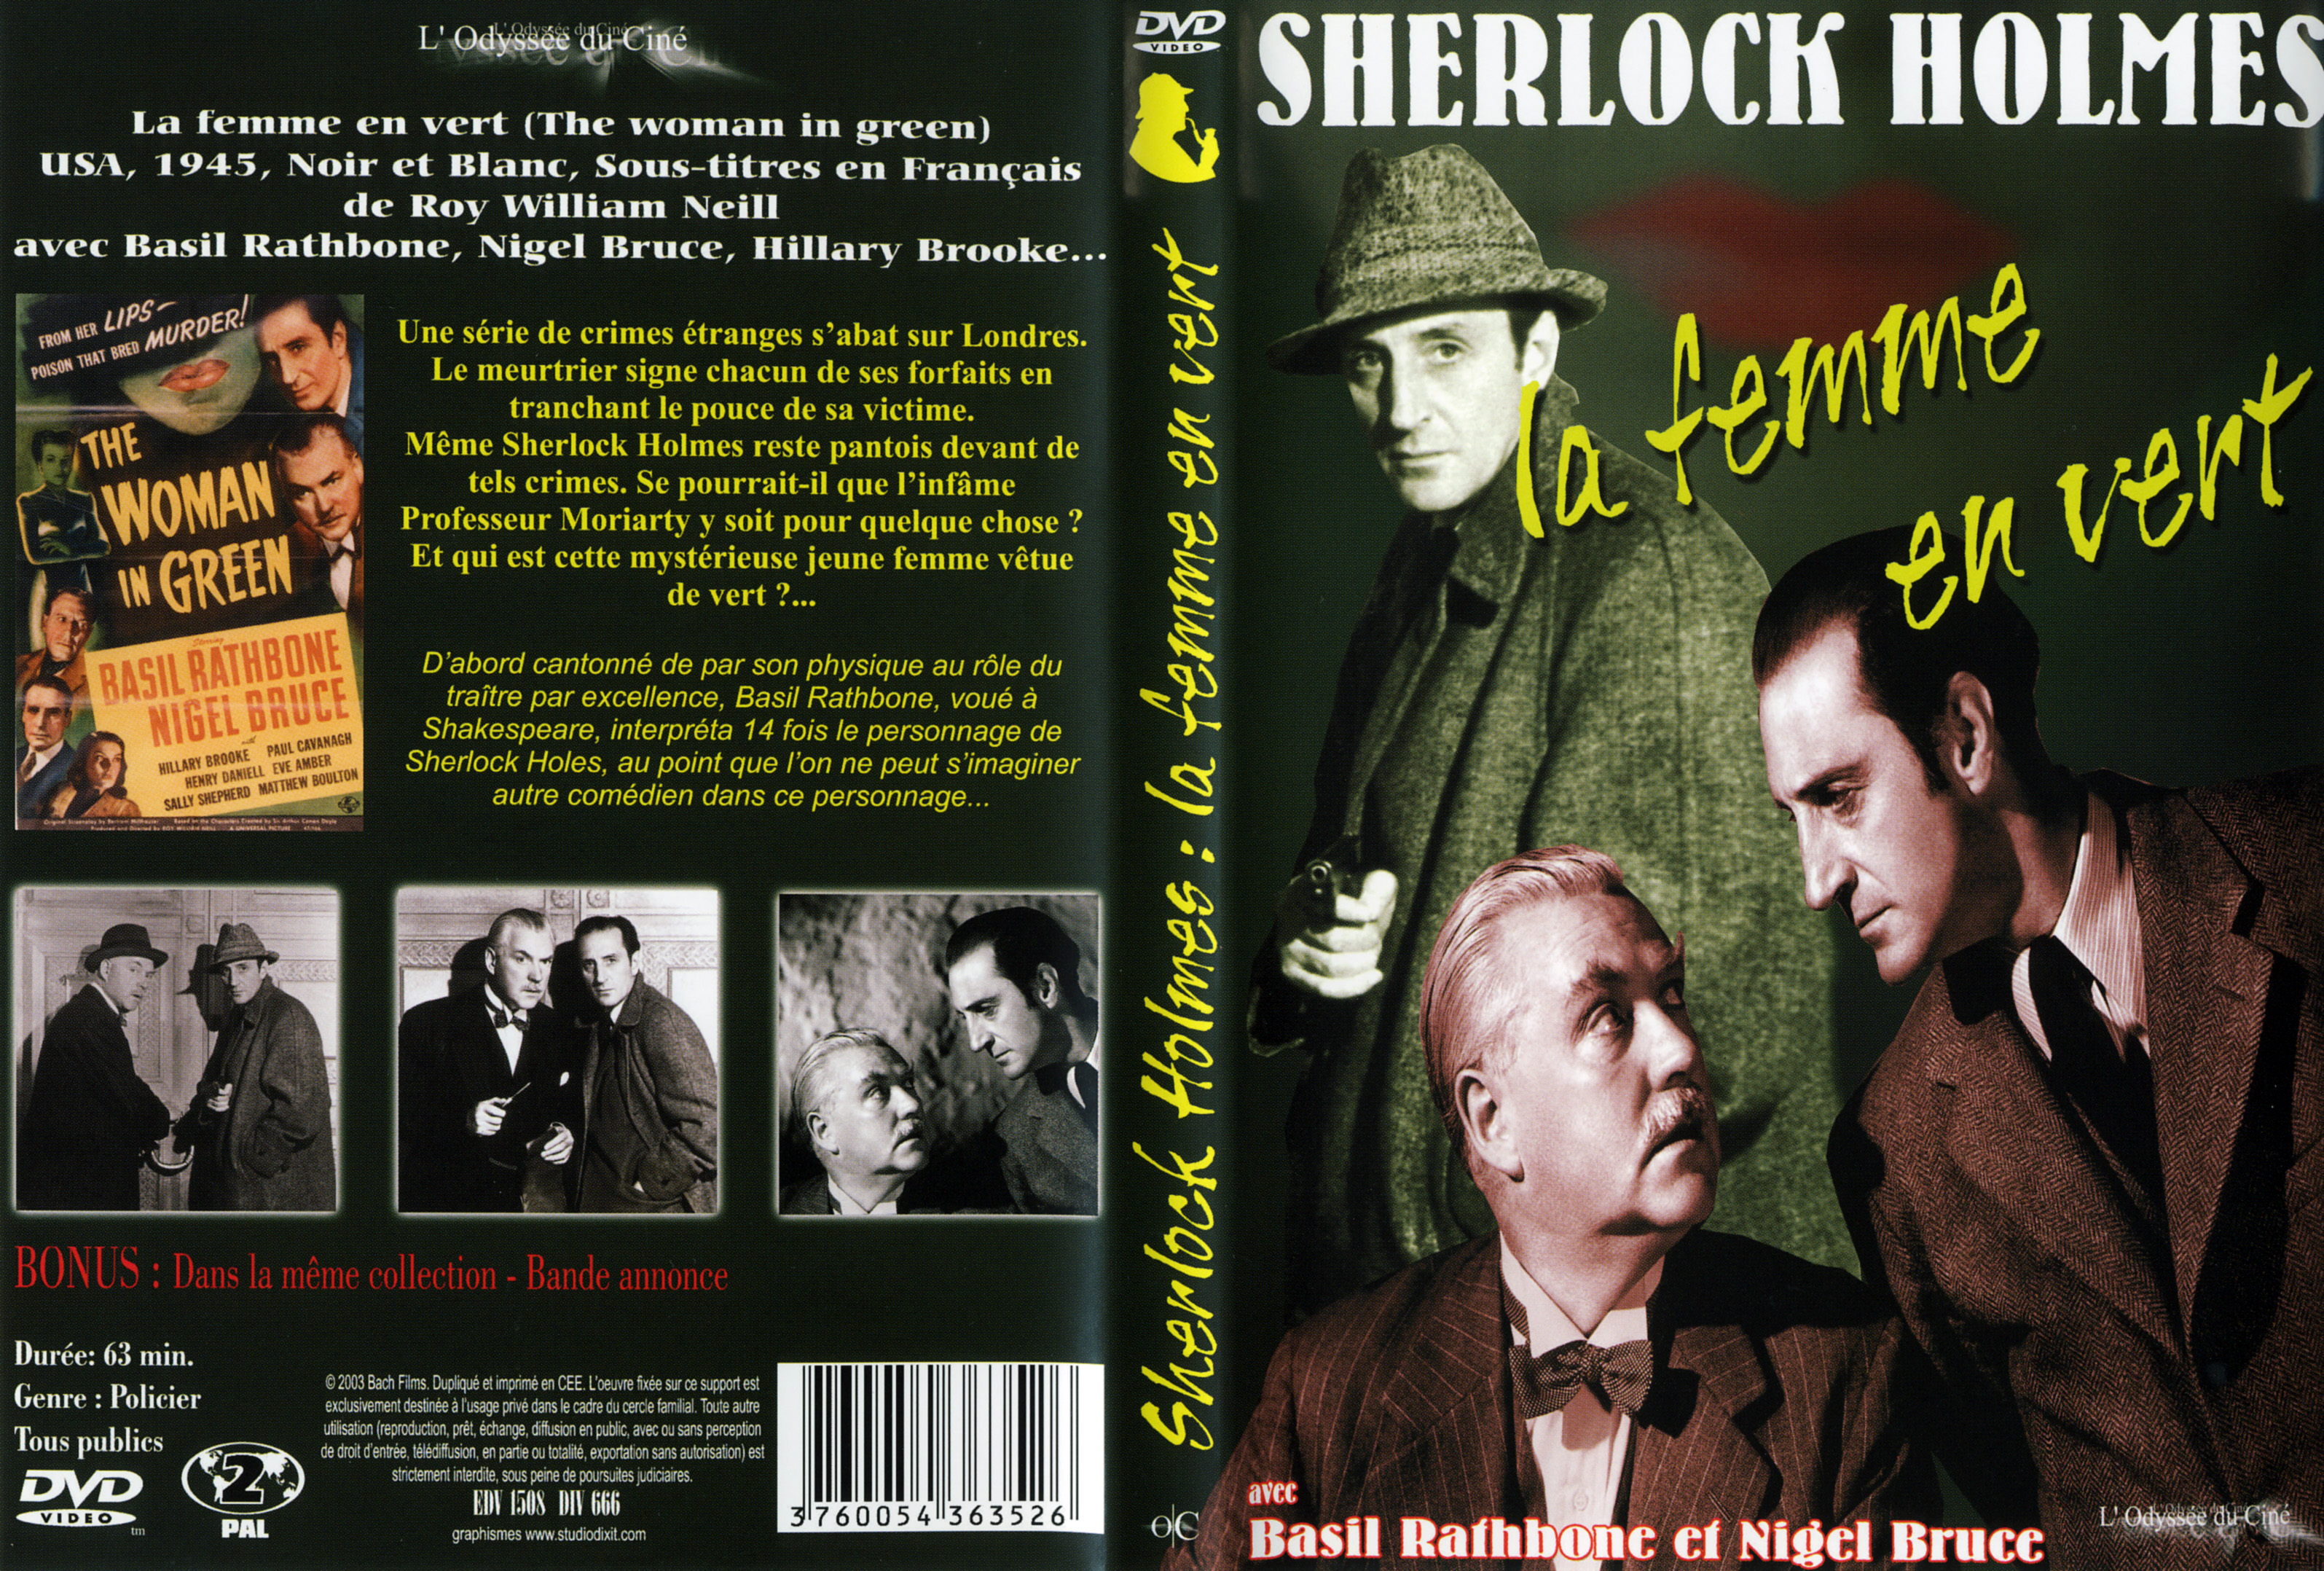 Jaquette DVD Sherlock Holmes - La femme en vert